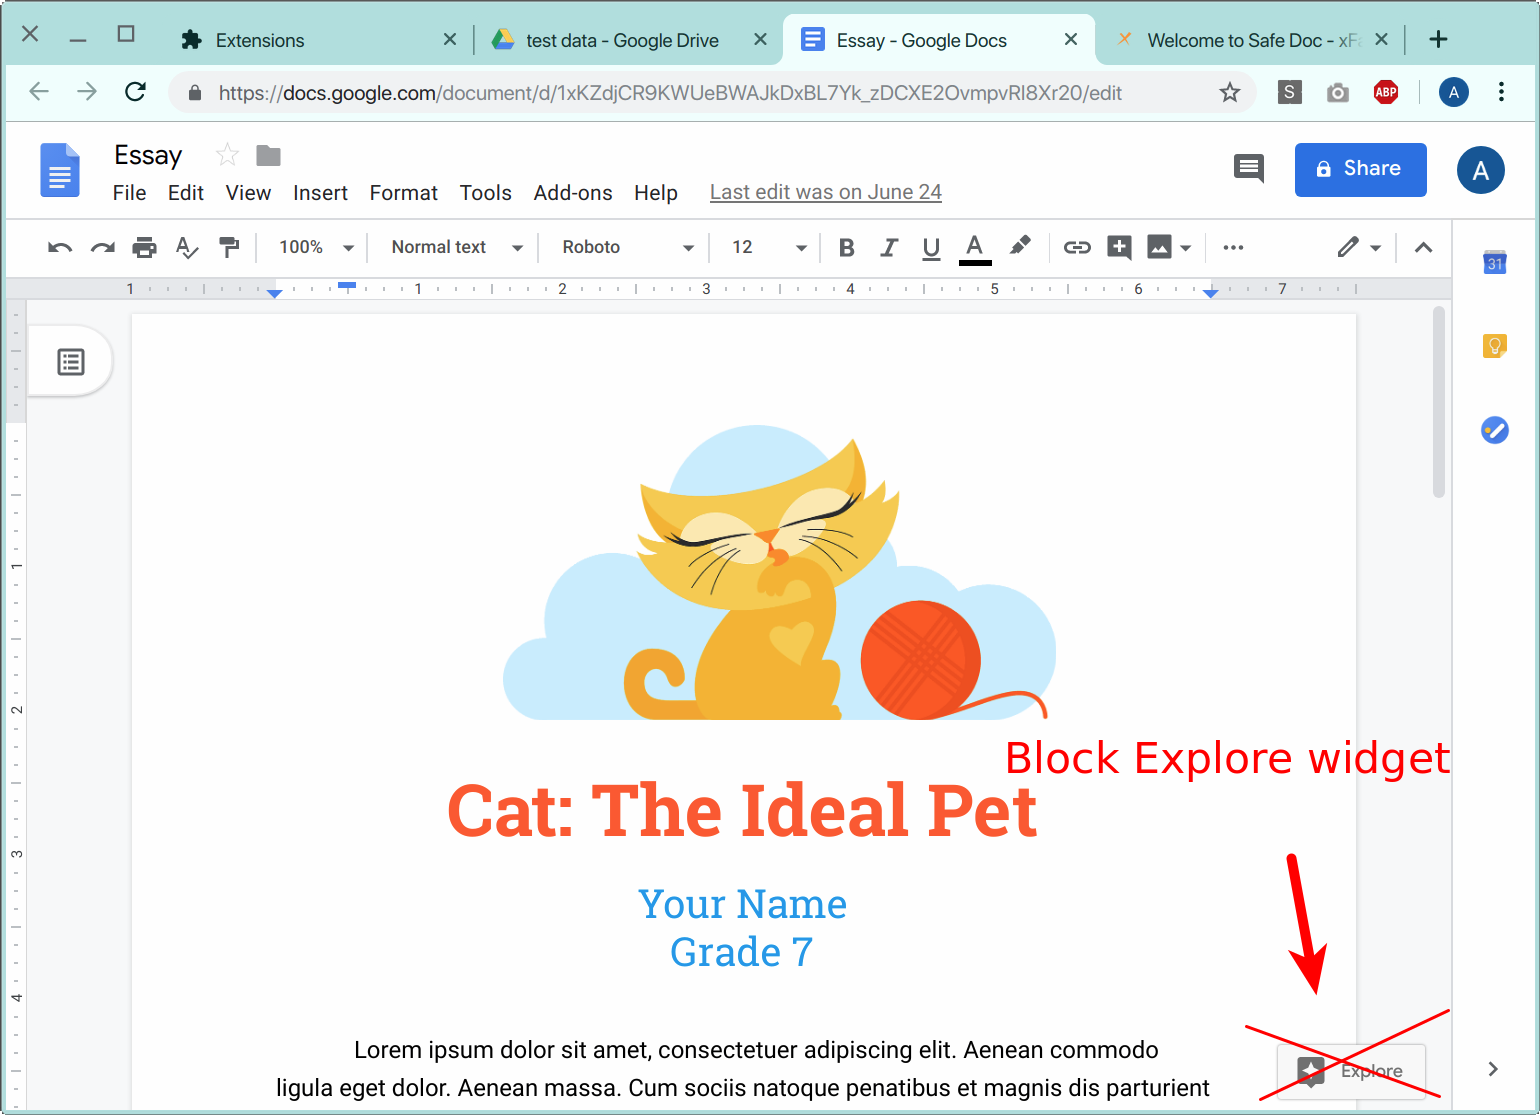 Block Explore Widget in Google Docs